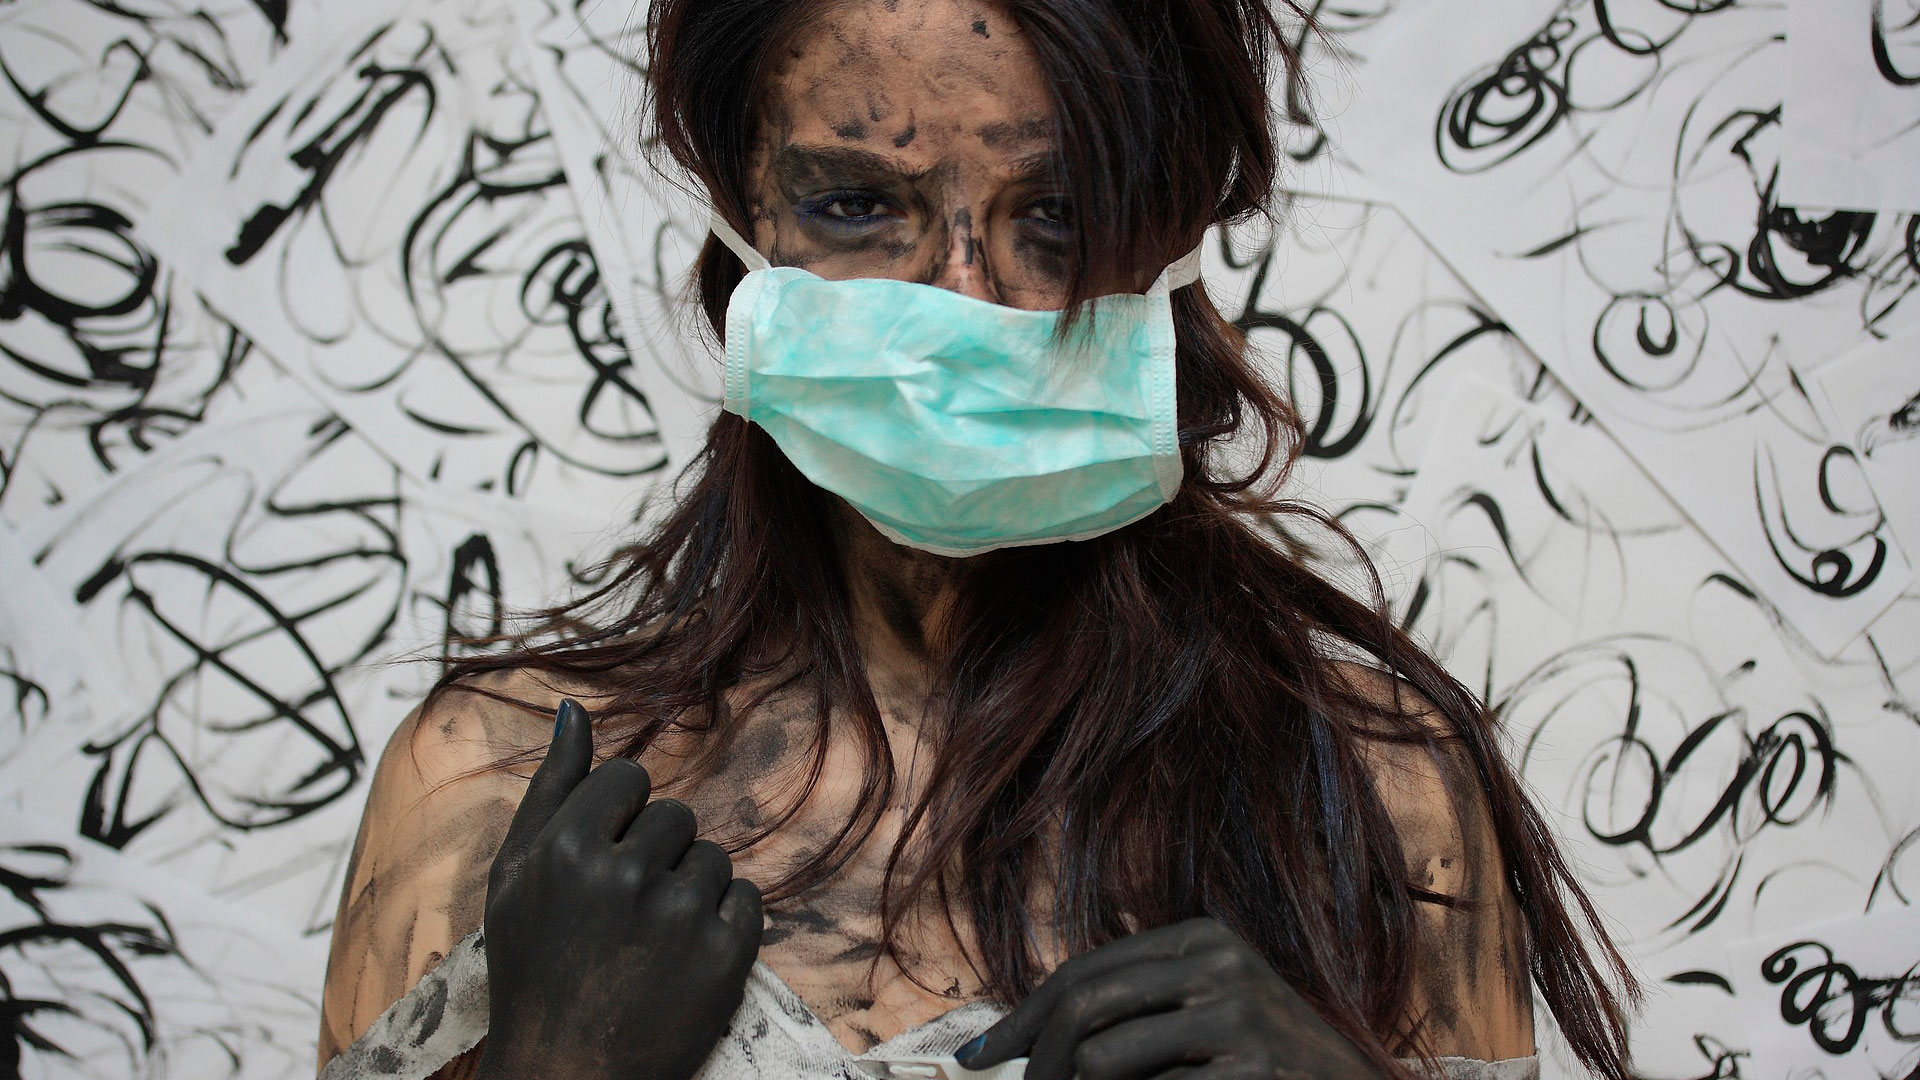 BAM! News - Bas les masques : “Et si vous découvriez que même le masque de votre chirurgien ne vous protège pas des infections ?“